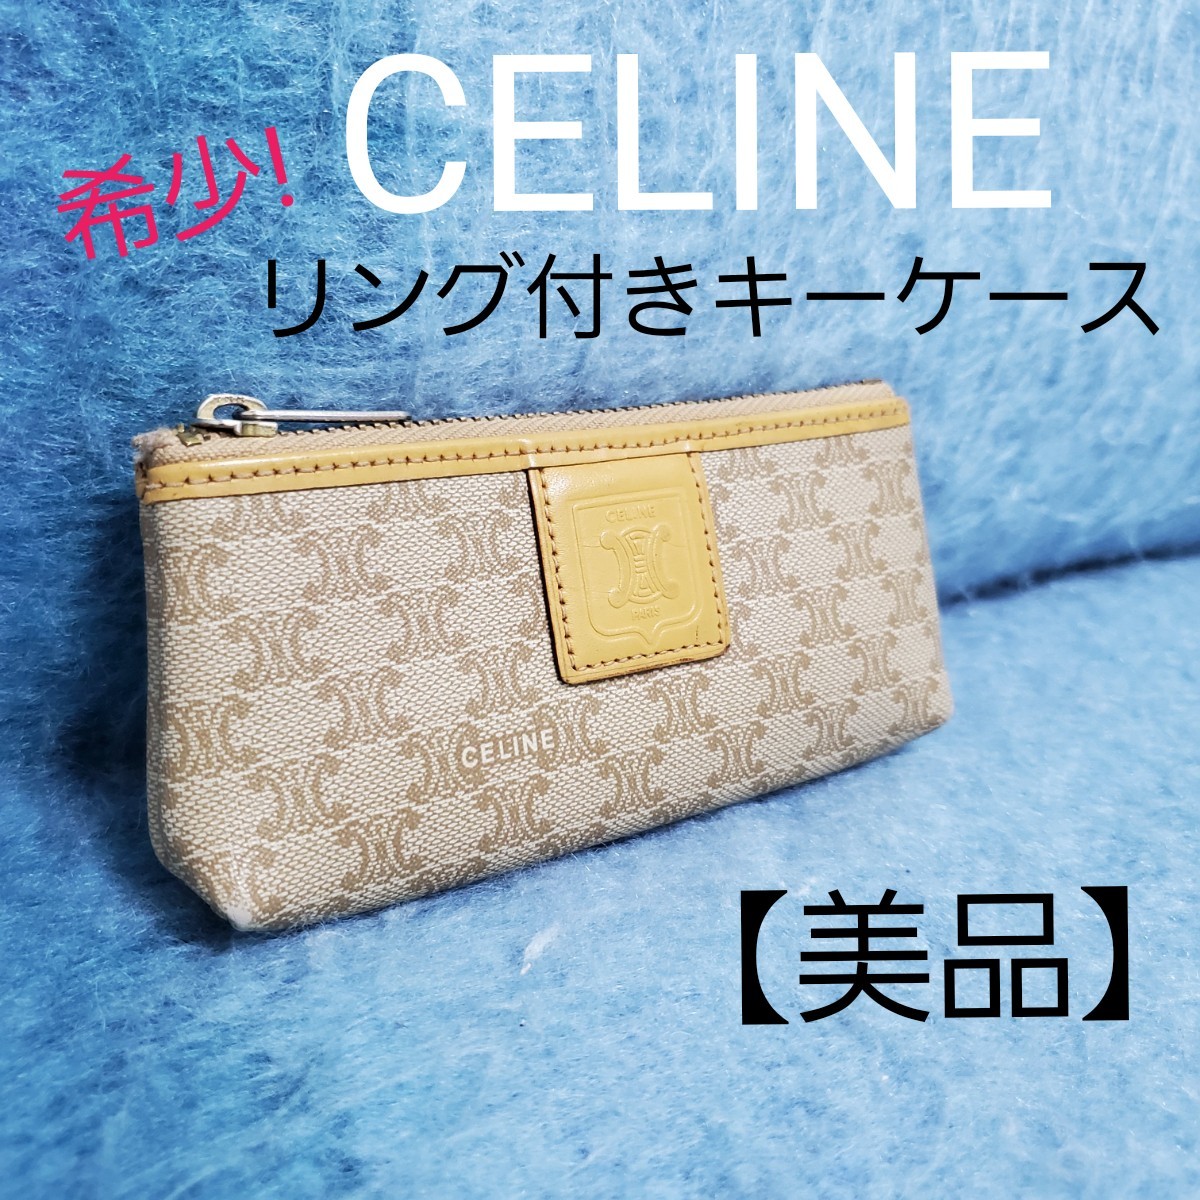 最新情報 CELINE セリーヌ CELINE キーケース セリーヌ コインケース コインケース 財布 キーケース 